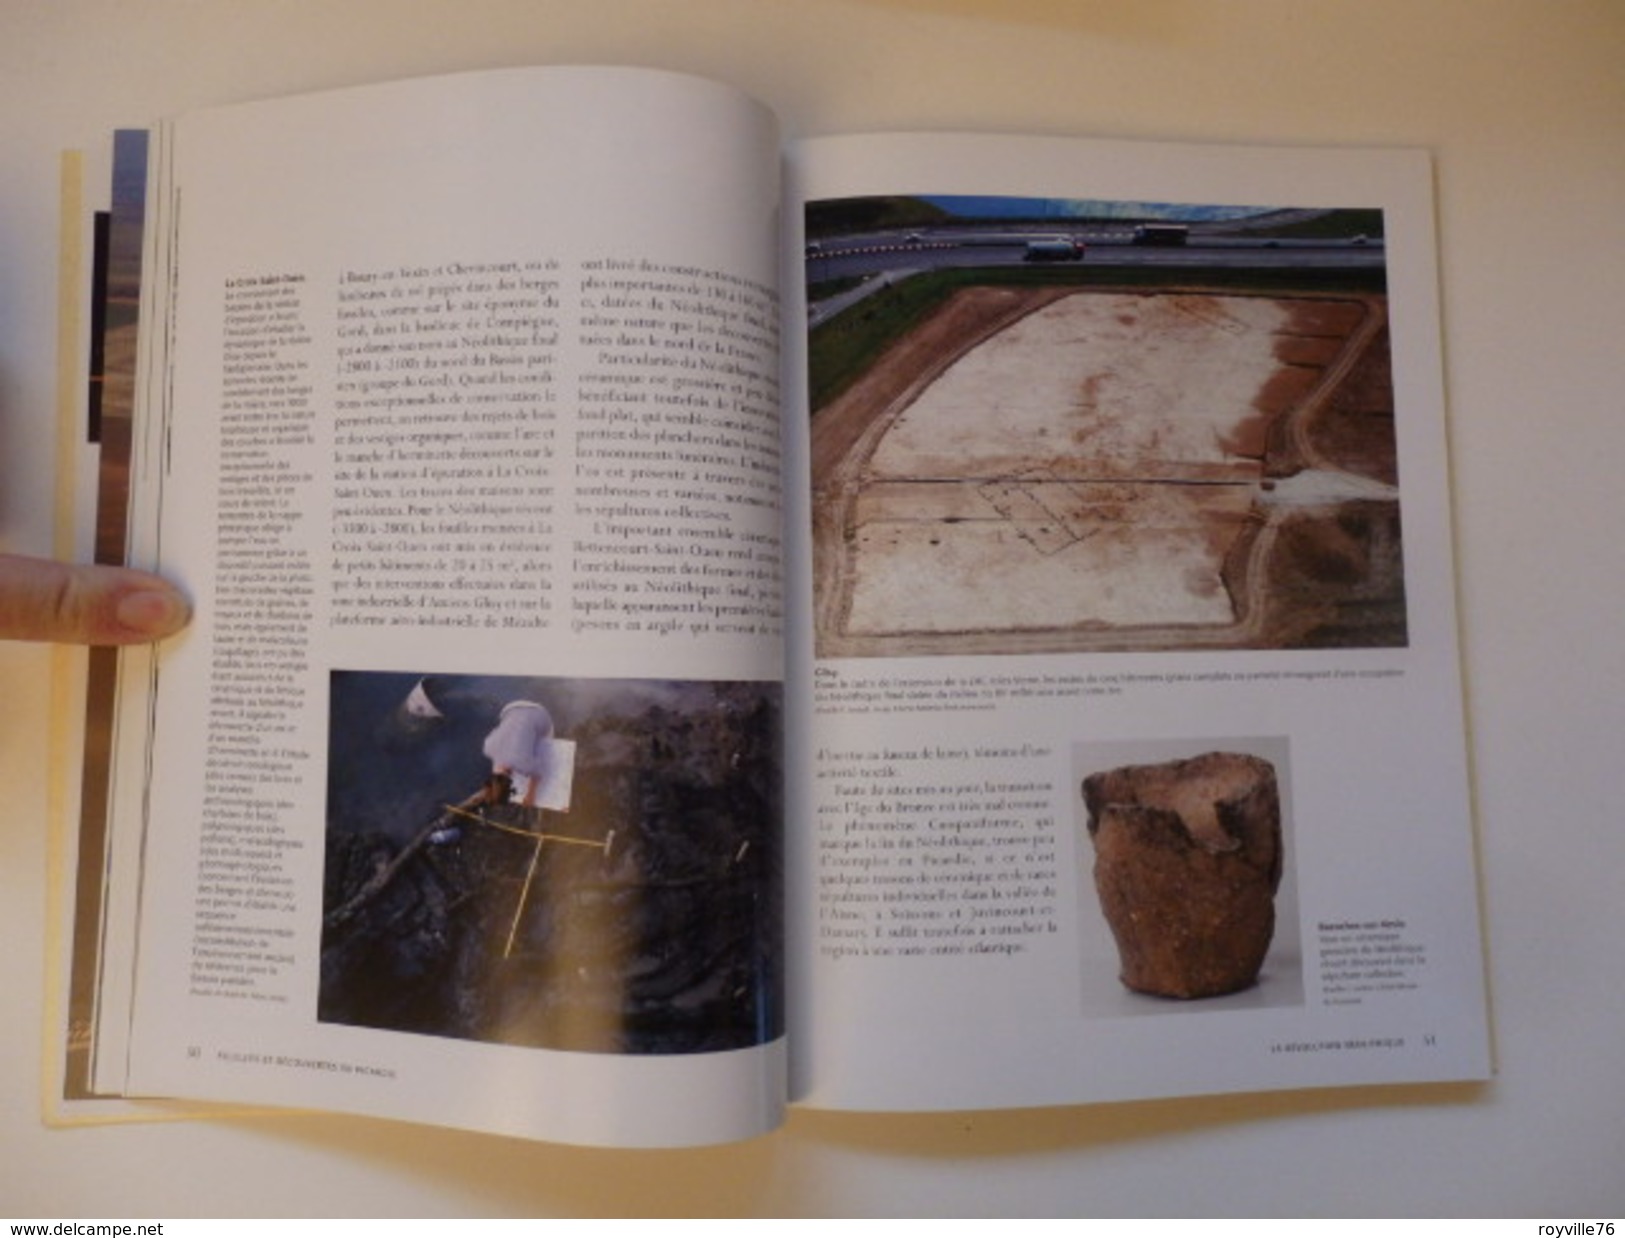 Livre sur fouilles et découvertes en Picaride par J.L Collart et M.Talon de 143 pages.